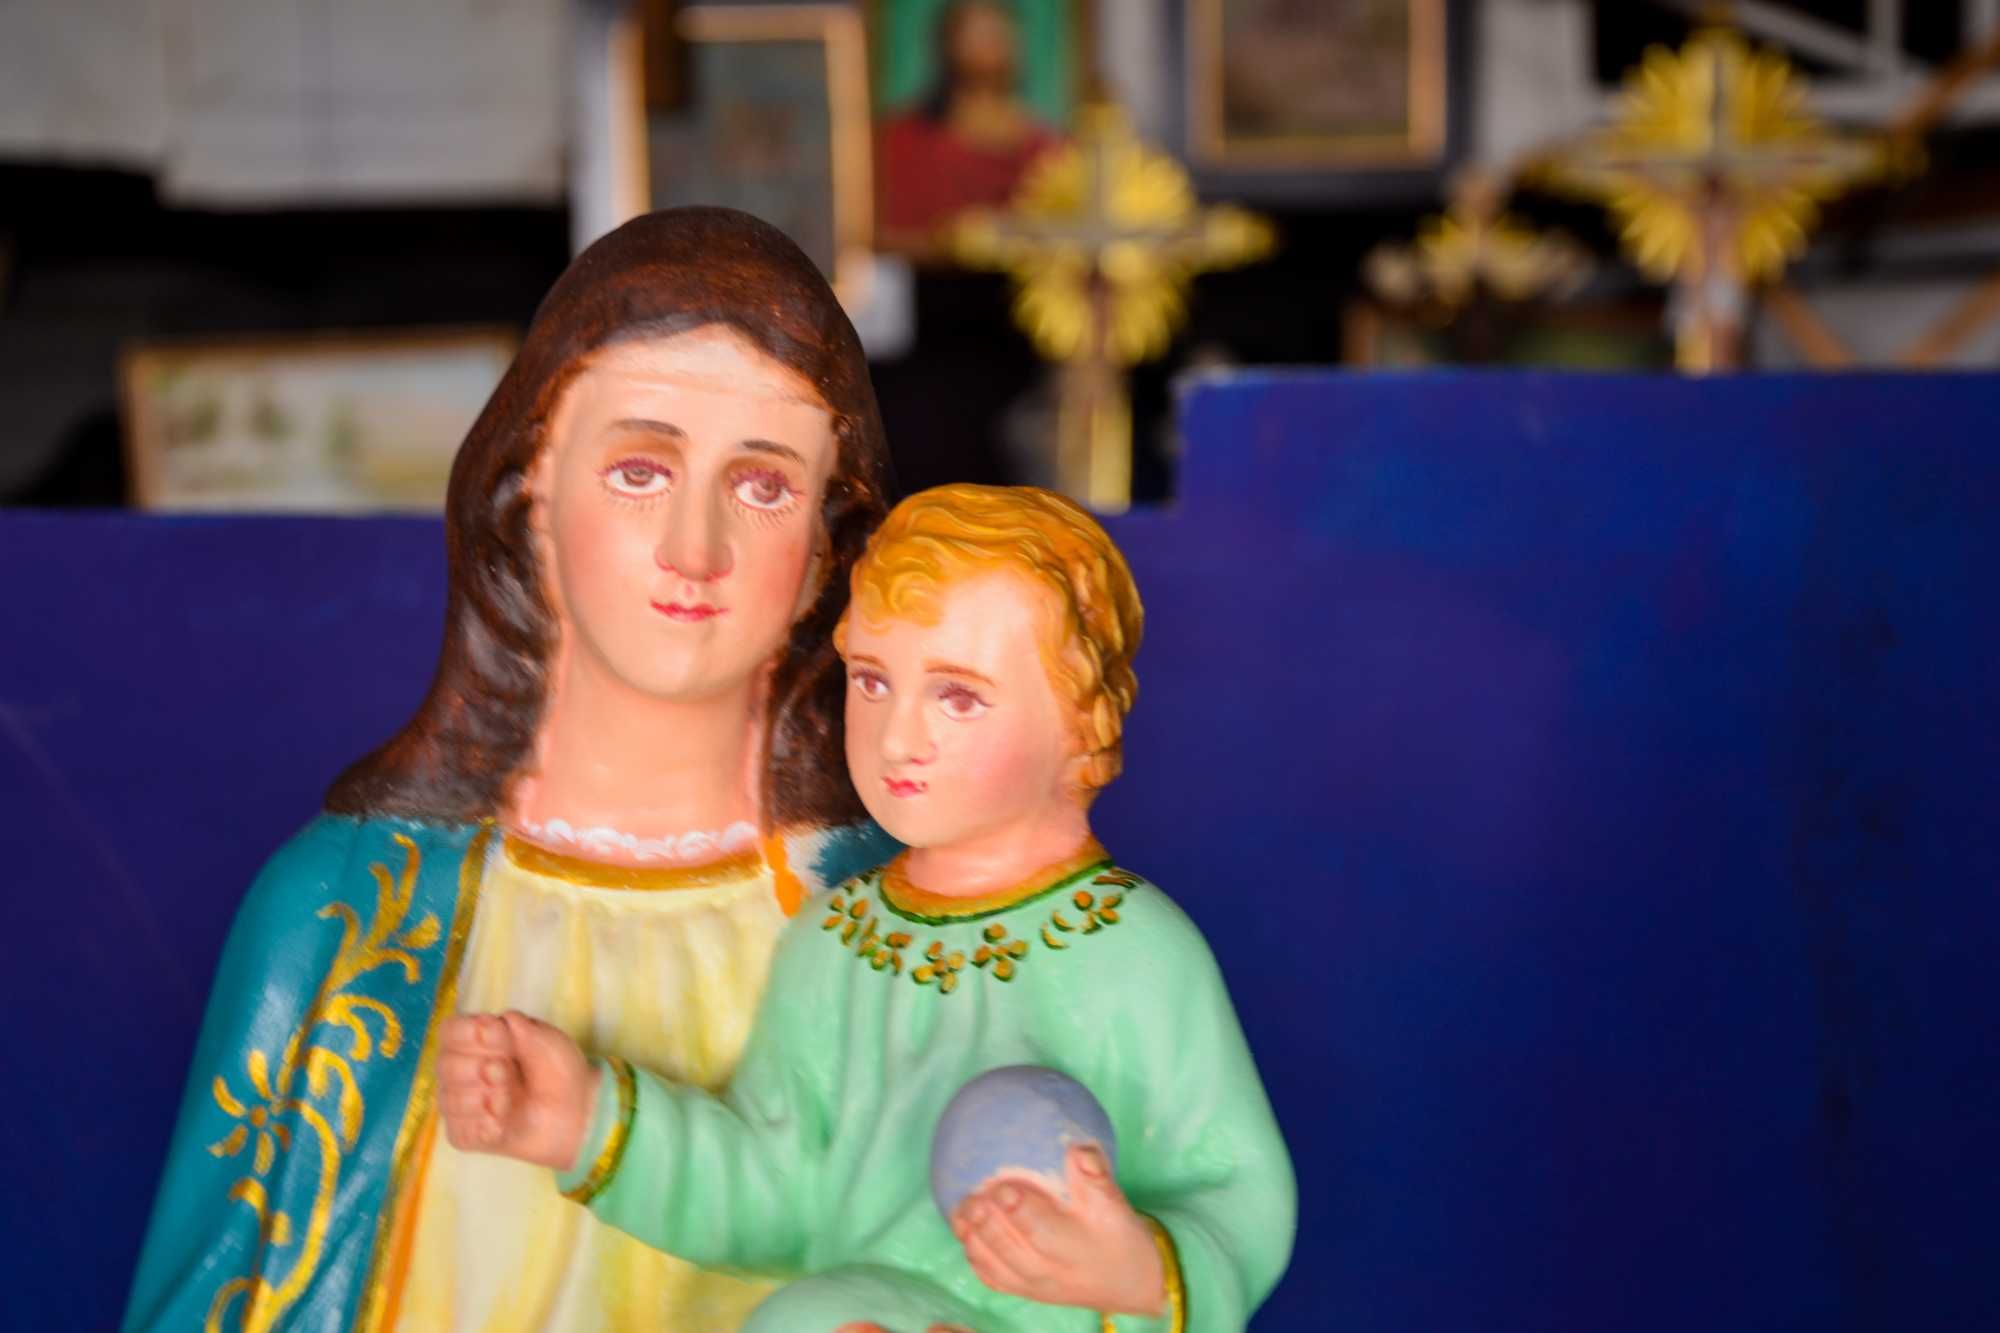 Artigos Religiosos: Senhora da Penha do Rio de Janeiro